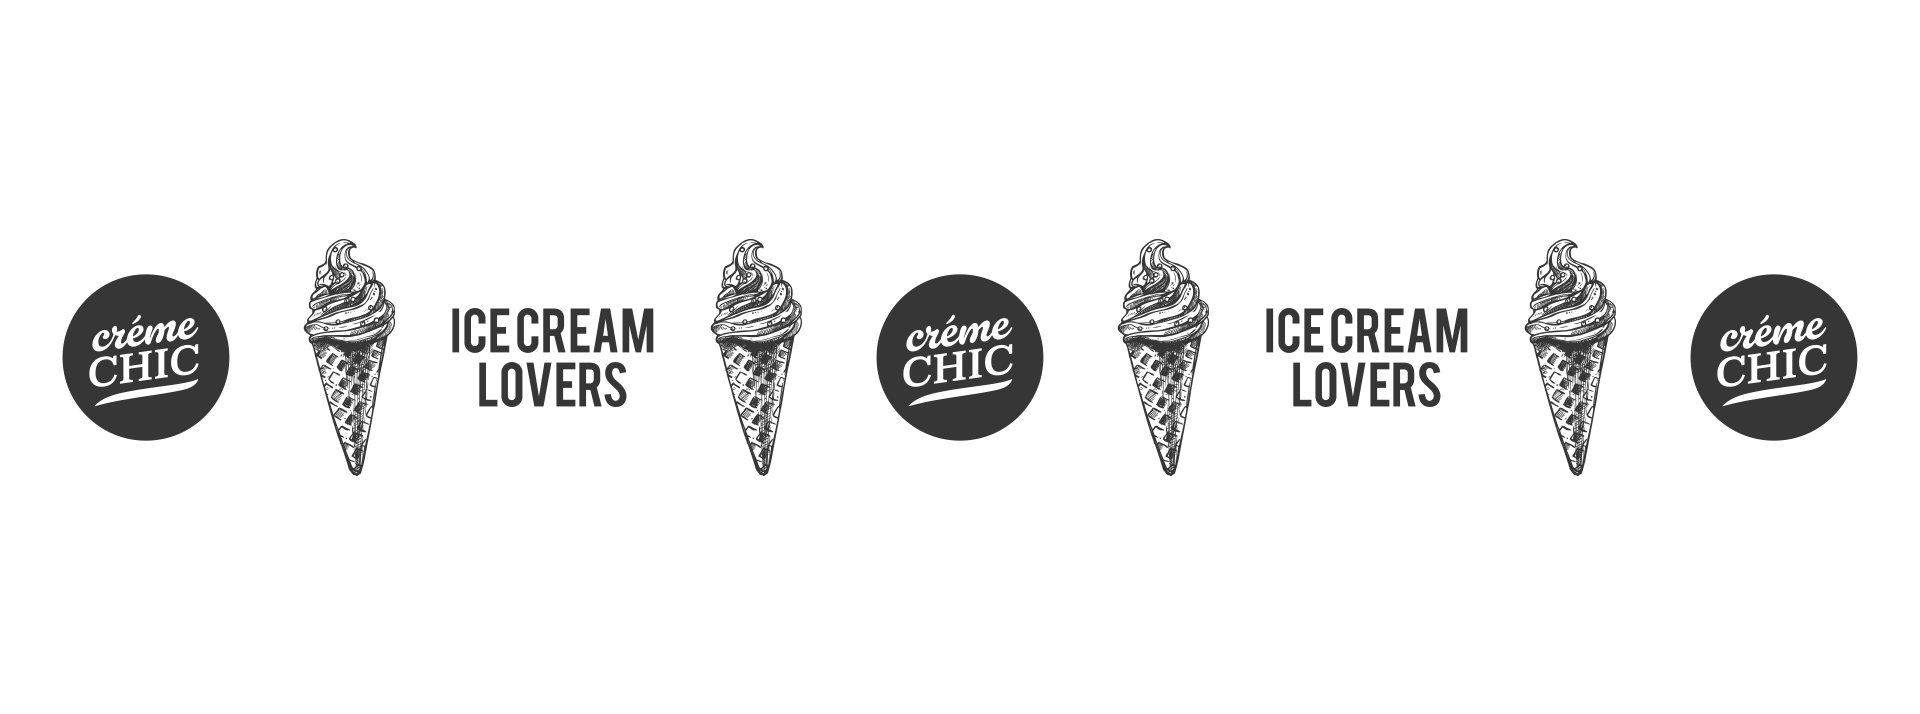 Branding design Creme chic logos